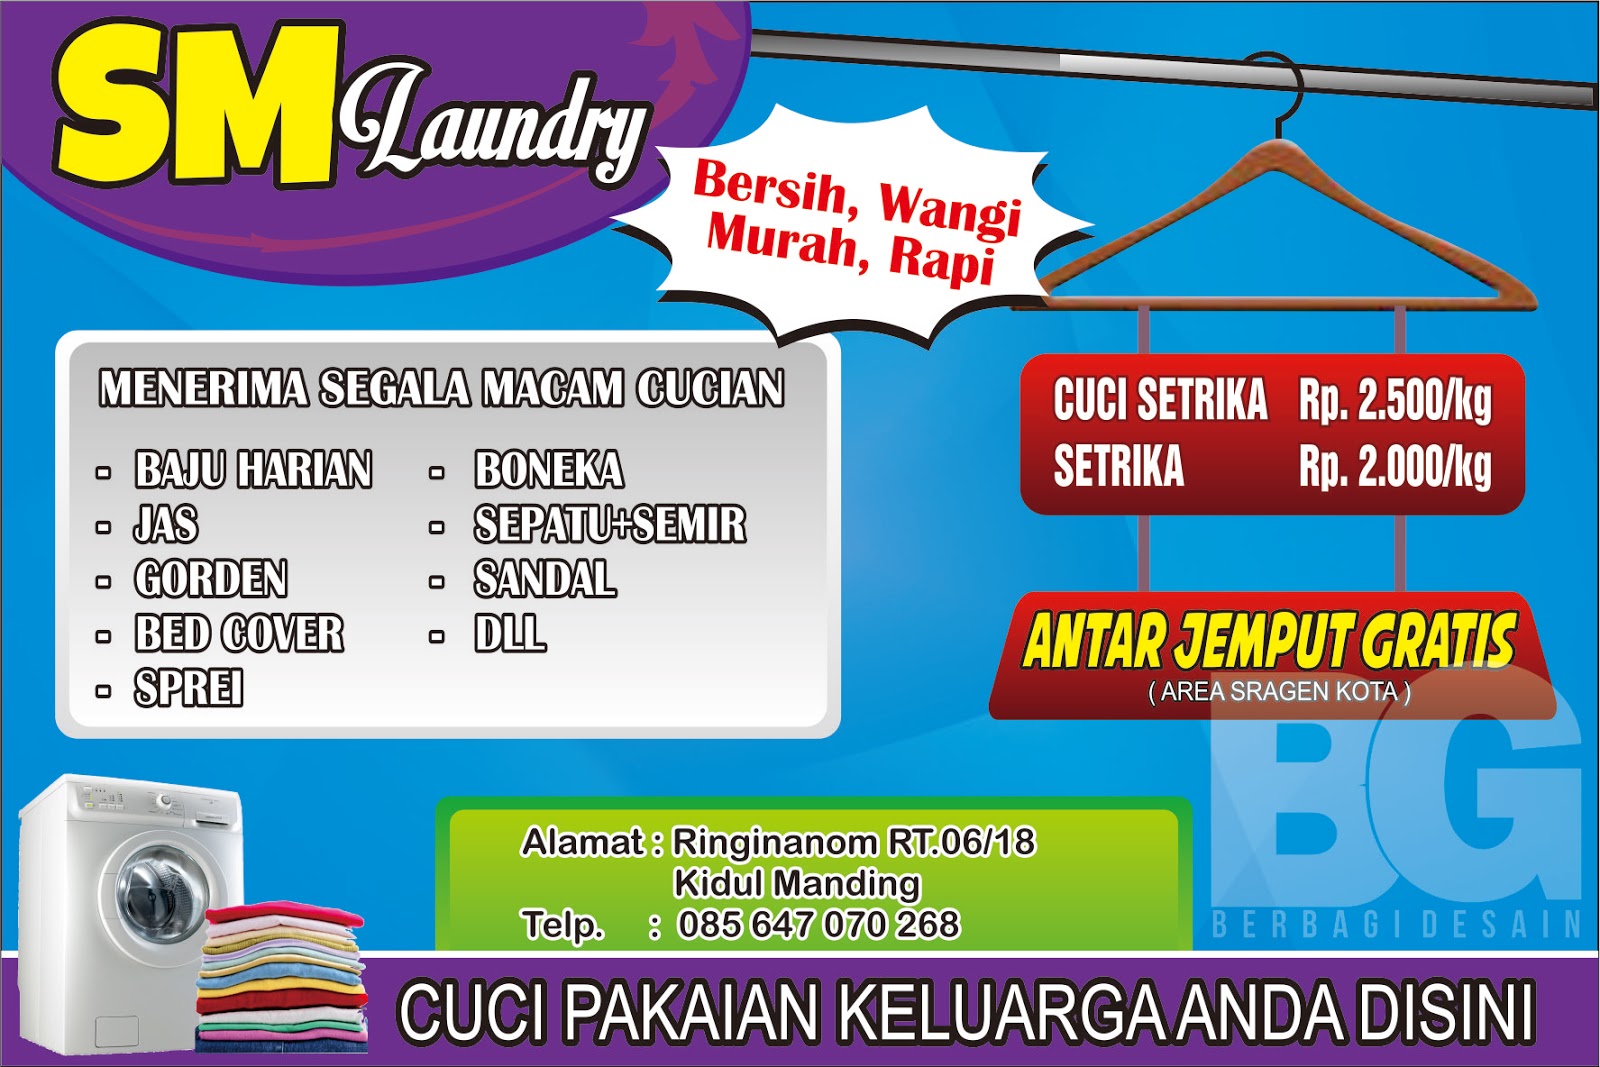 desain banner  sm laundry  Berbagi Desain